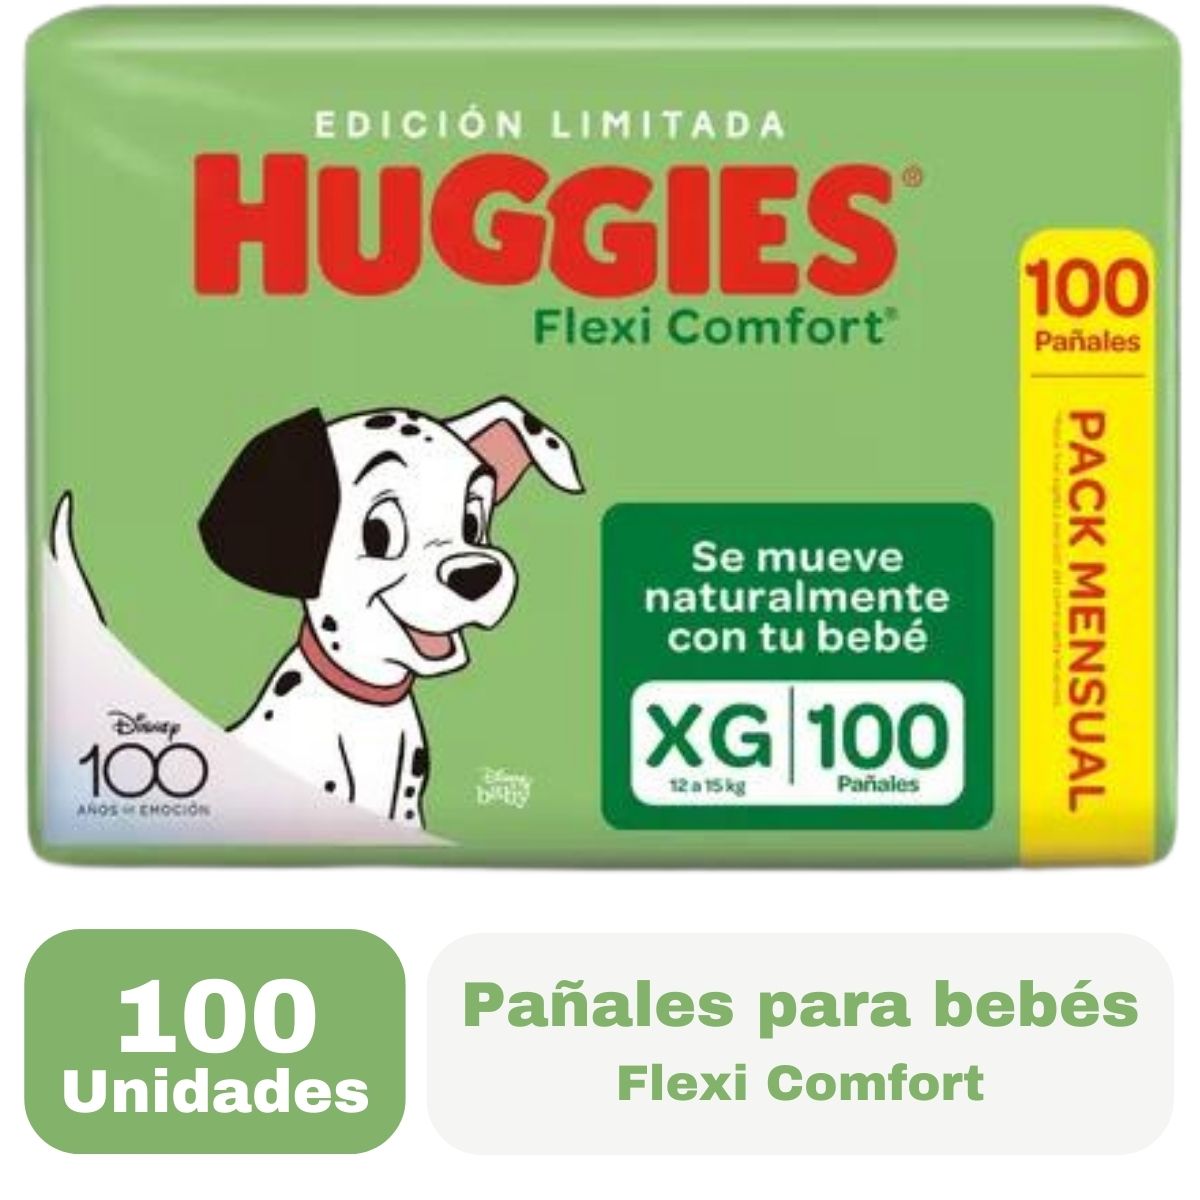 Imagen 1 de 2 de Pañales Huggies Flexi Comfort Pack Mensual Extra Flex XG x 100 unidades